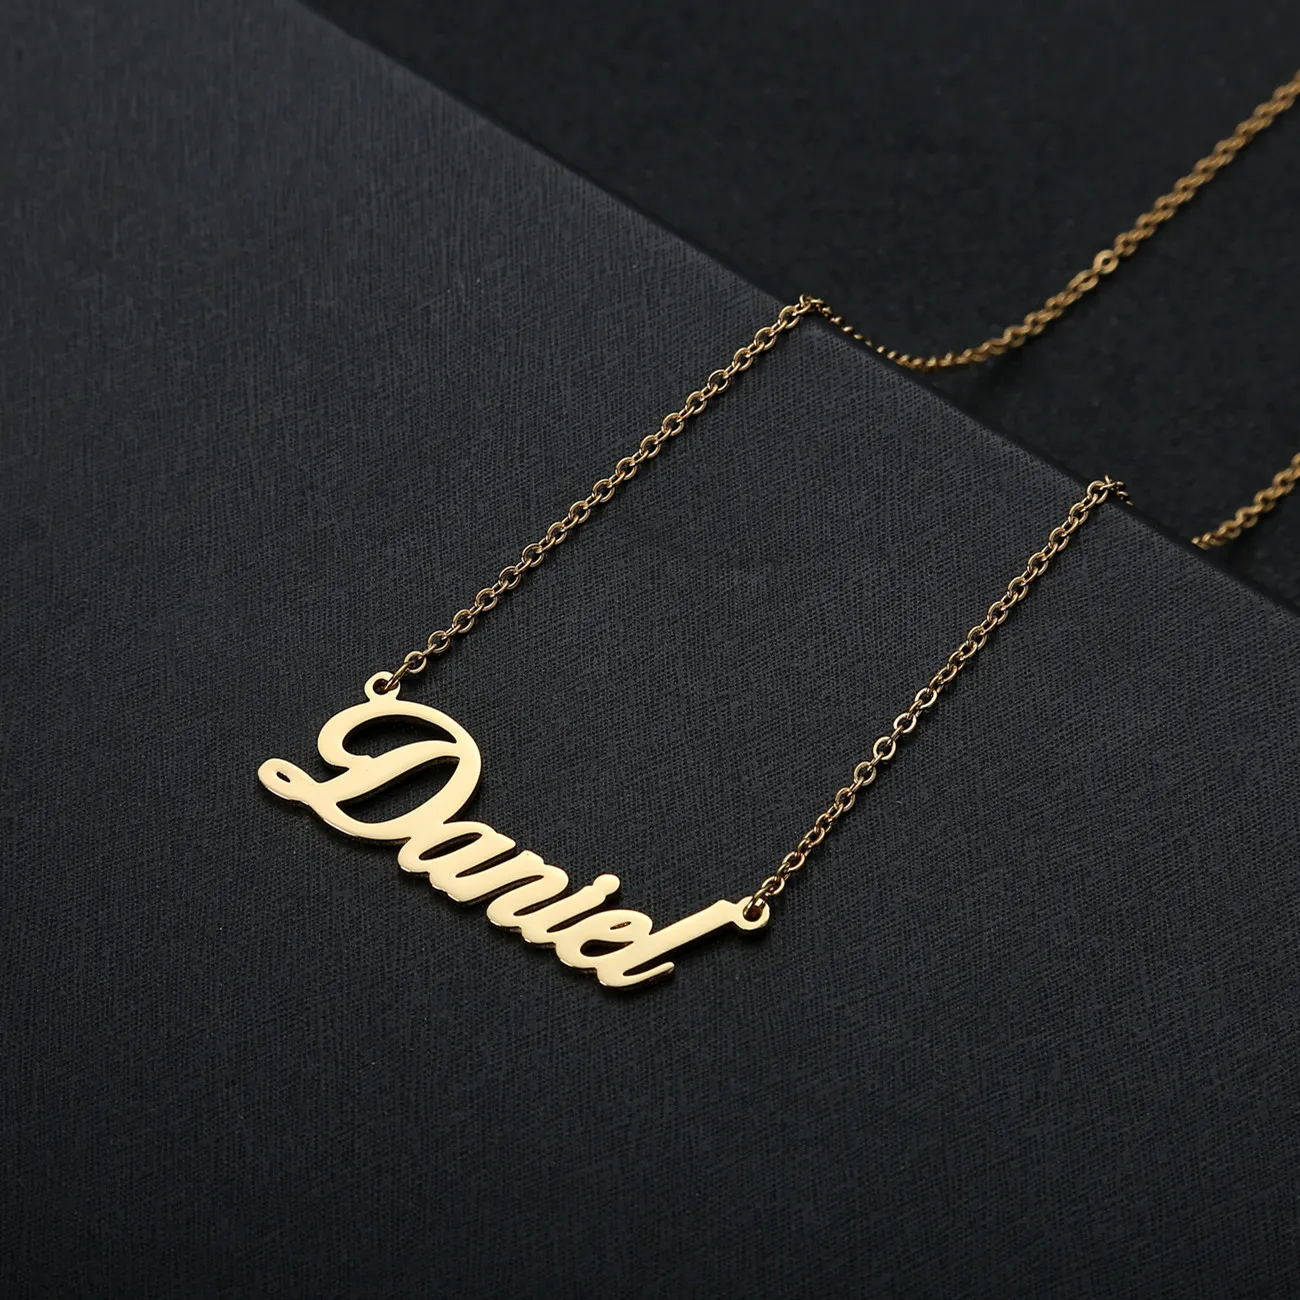 رسائل اسم الخط الفني المخصص مع سلسلة الماس الكوبي ثقيلة للرجال للنساء الذهب Silver Rosegold Color Jewelry244r